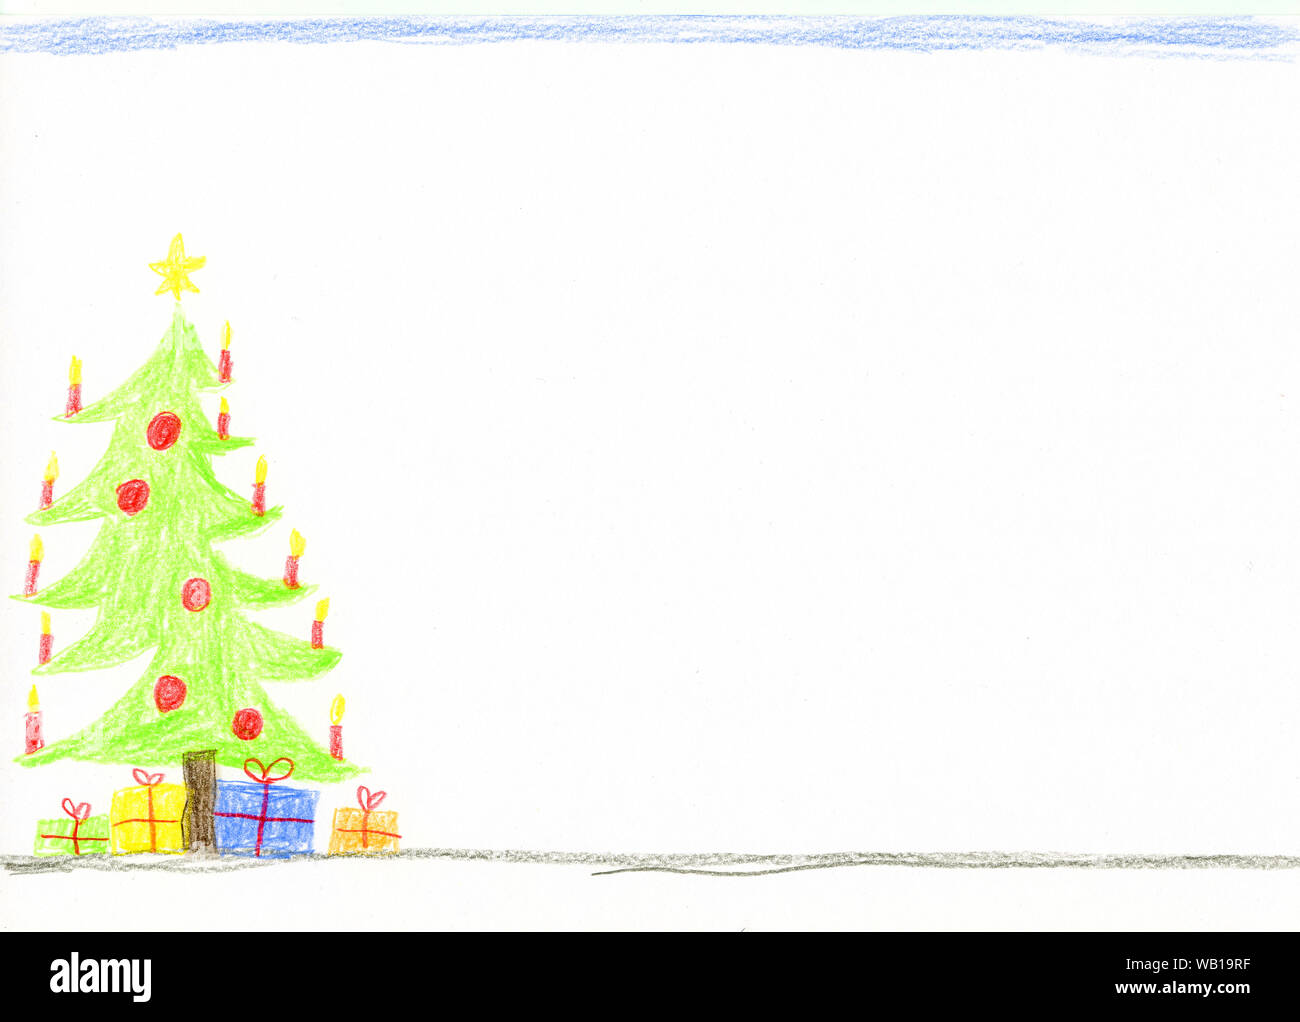 Décorées de dessins d'enfants avec l'arbre de Noël et présente Banque D'Images